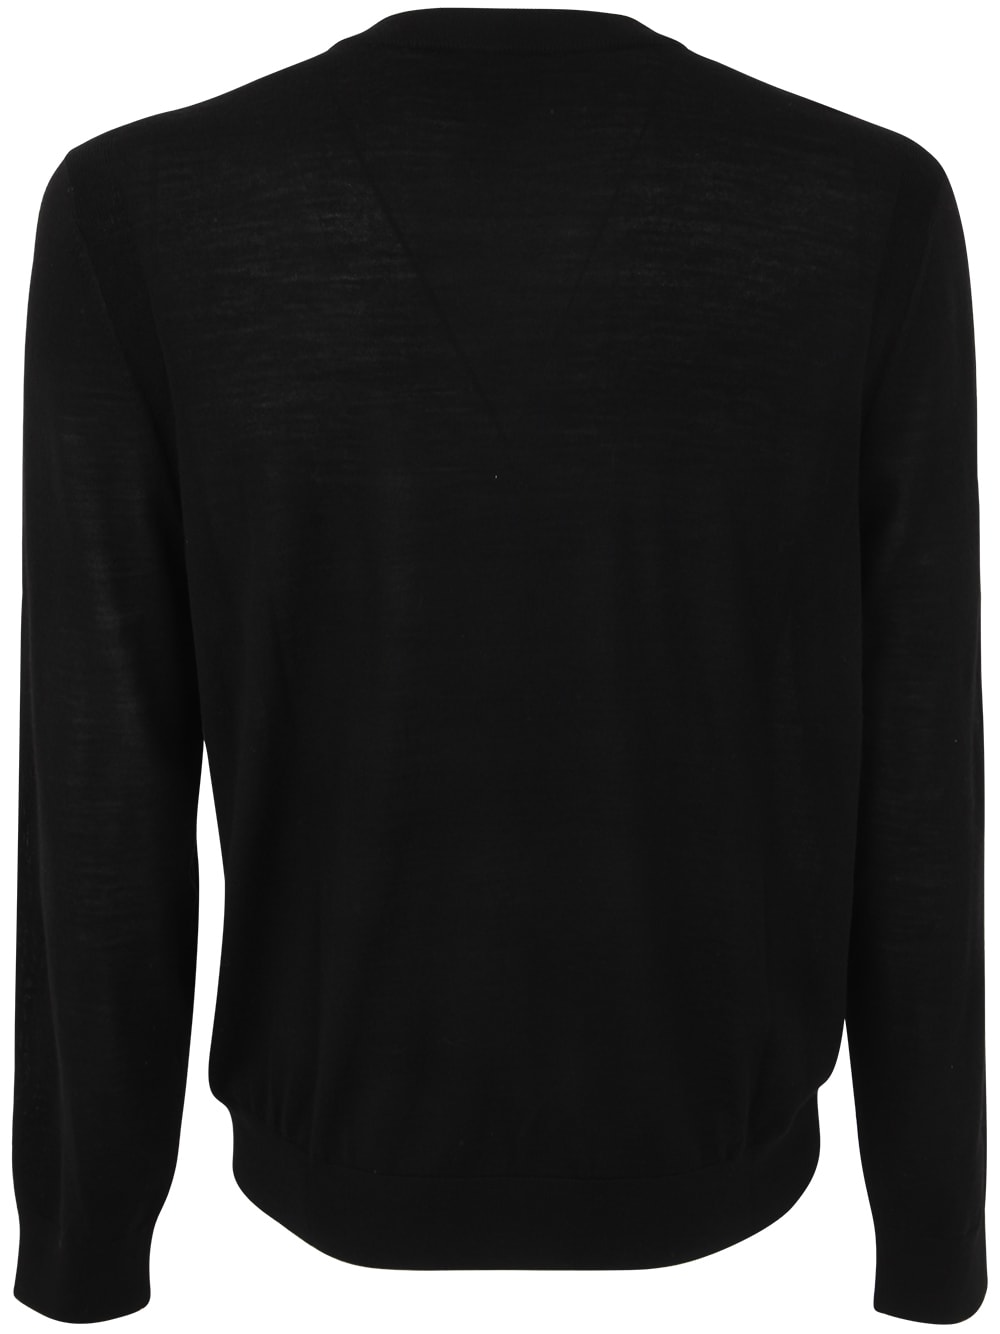 Shop Paul Smith Mens Sweater V Neck In Blacks